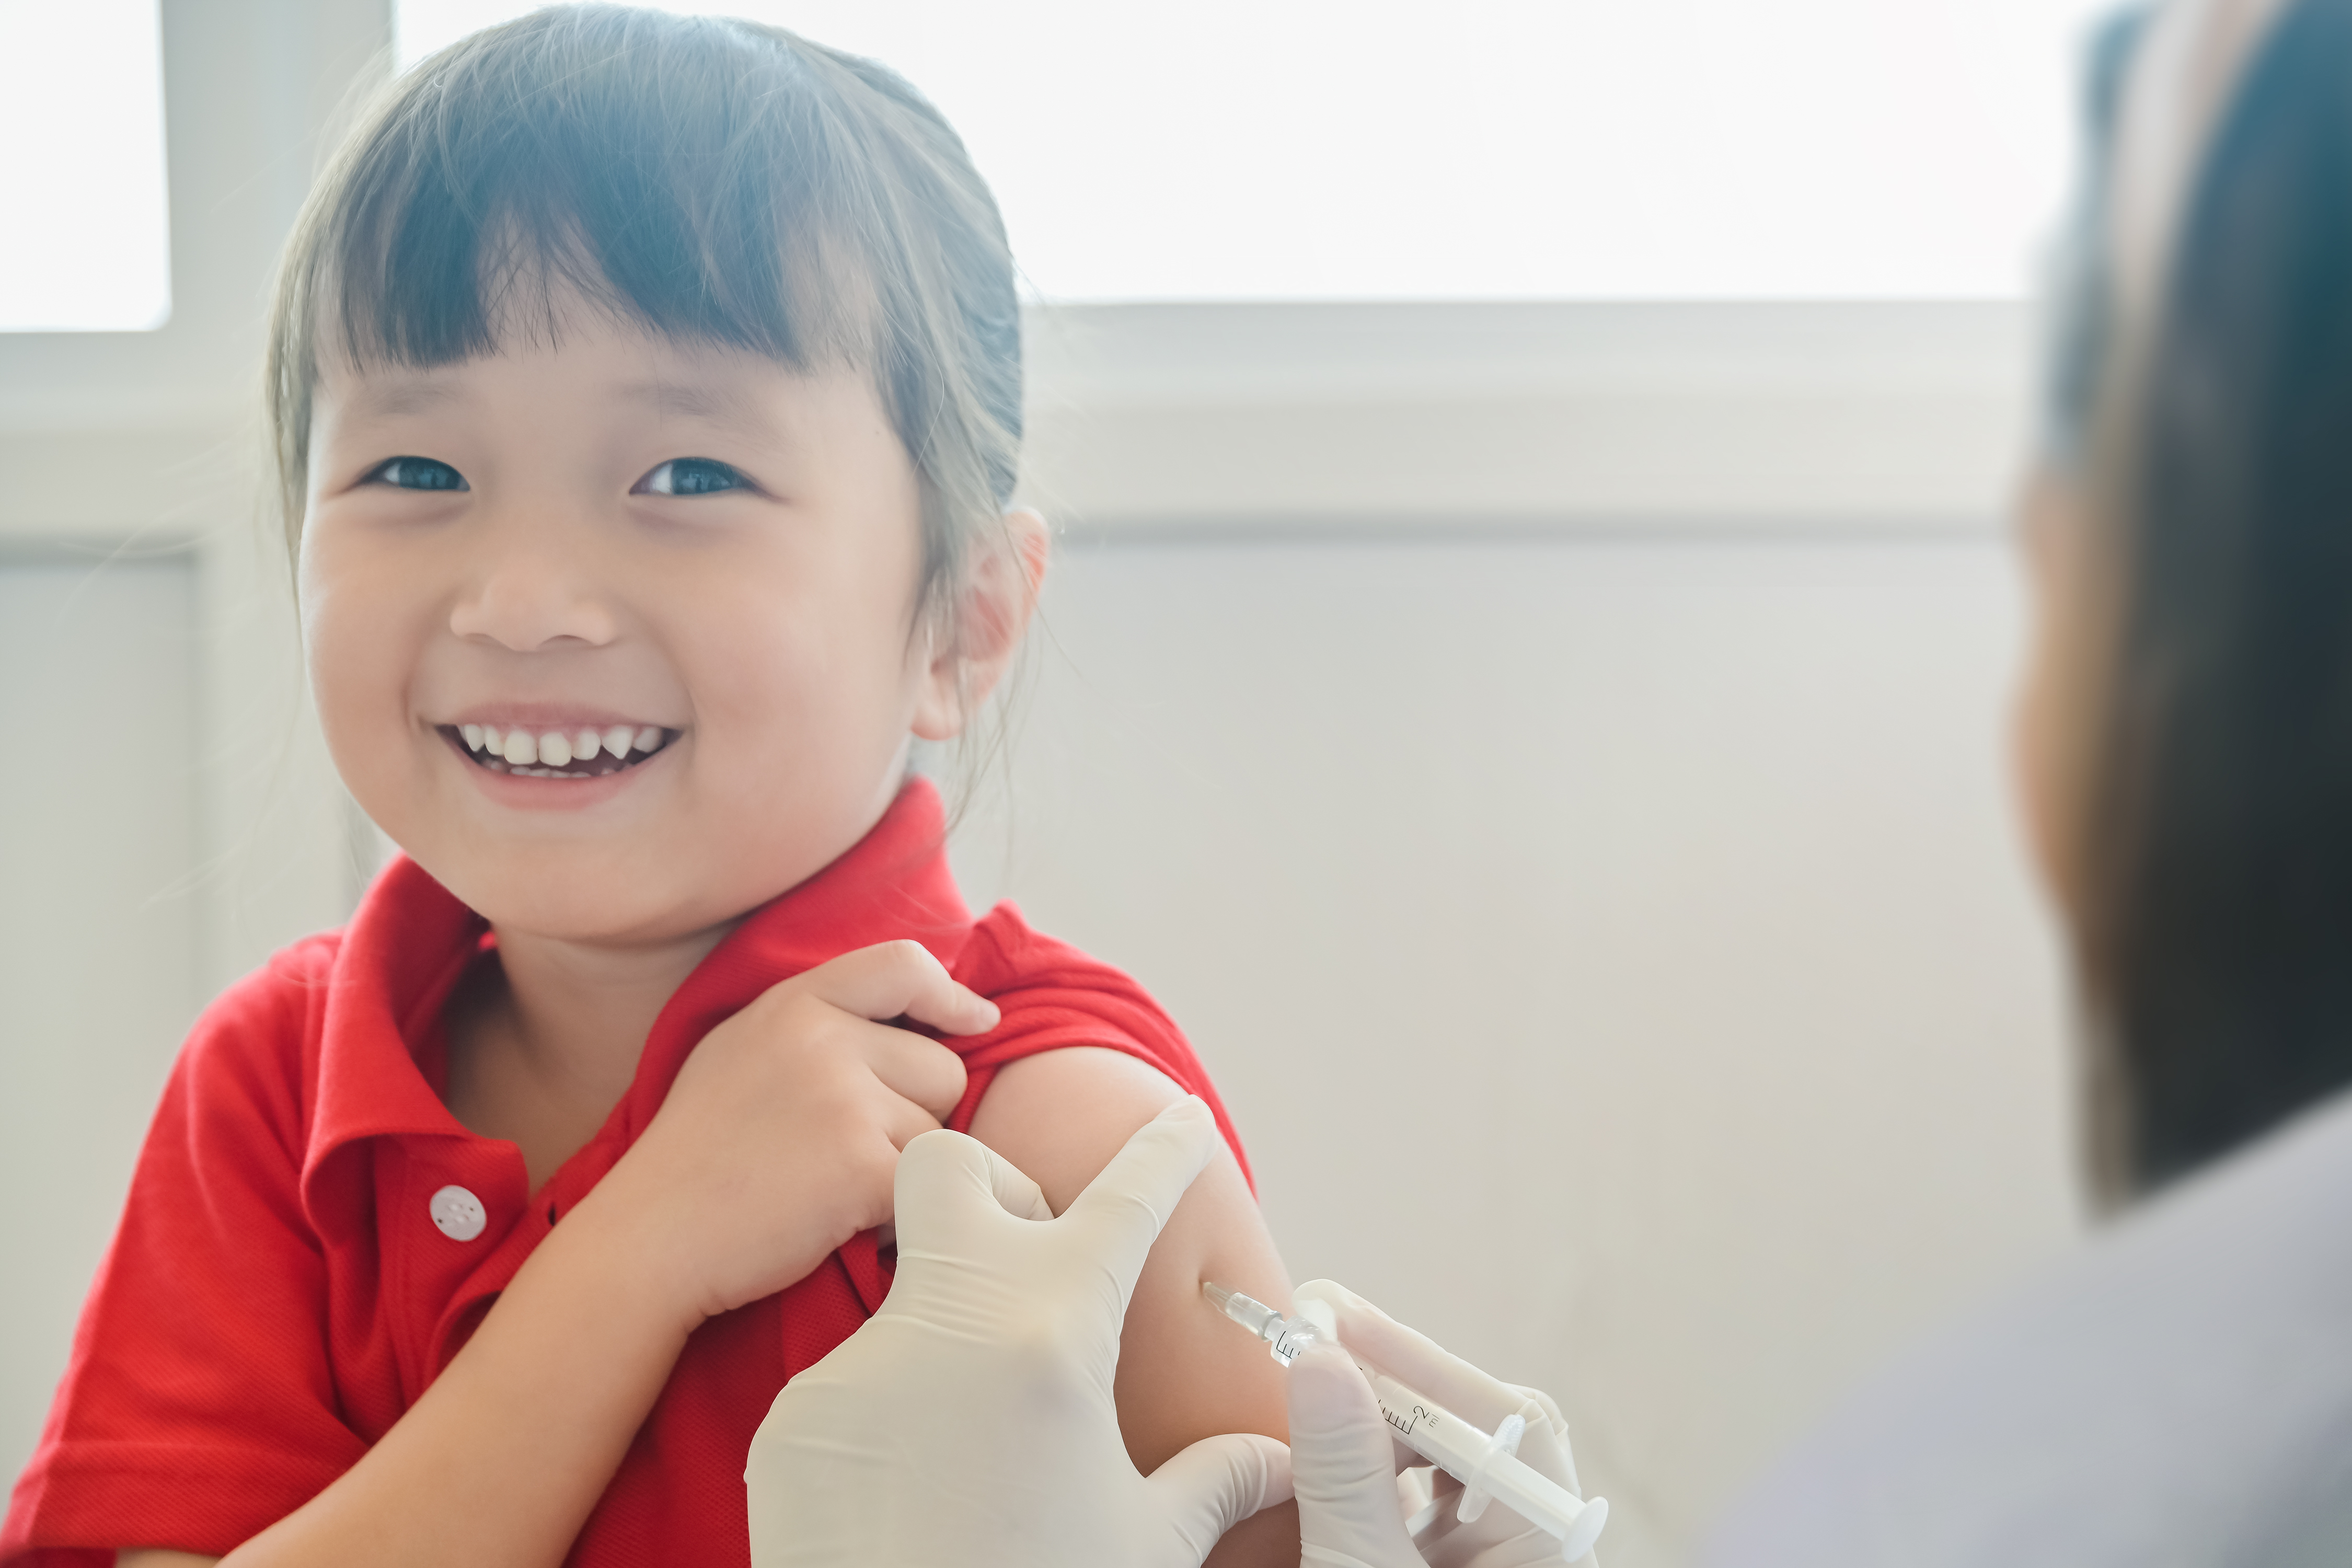 6 個月至 4 歲的兒童可接種科興疫苗；5 至 17 歲的兒童及青少年可接種復必泰疫苗或科興疫苗